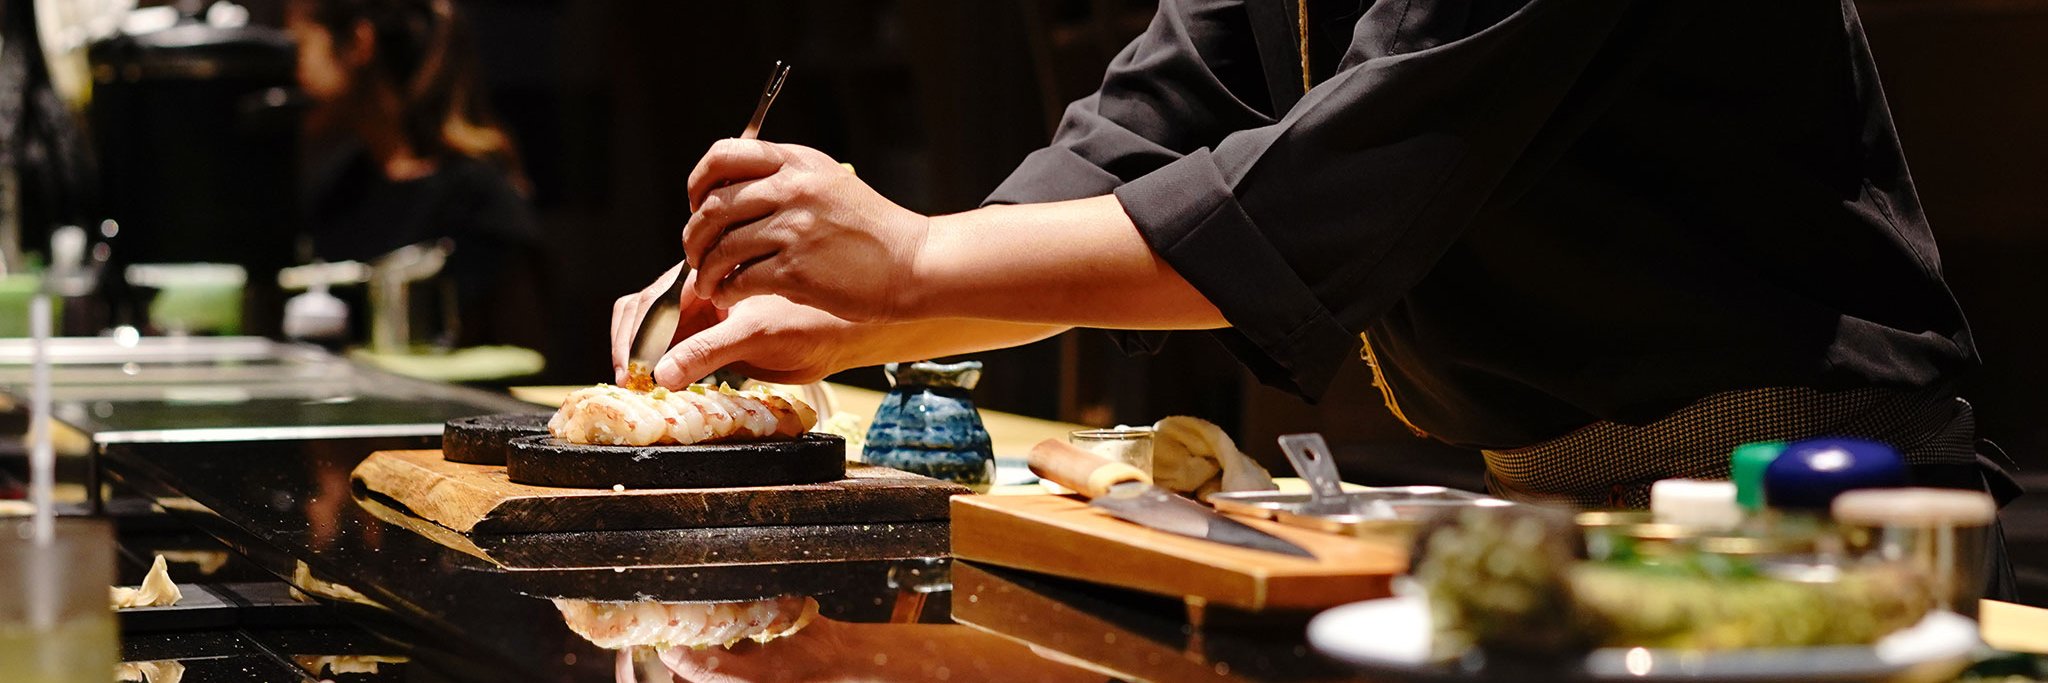 Ein ausgeklügeltes Aromenspiel, unterschiedliche Zubereitungsmethoden –  und sogar die Farben der Zutaten sind aufeinander abgestimmt: Die japanische Kulinarik ist ein Gesamtkunstwerk.